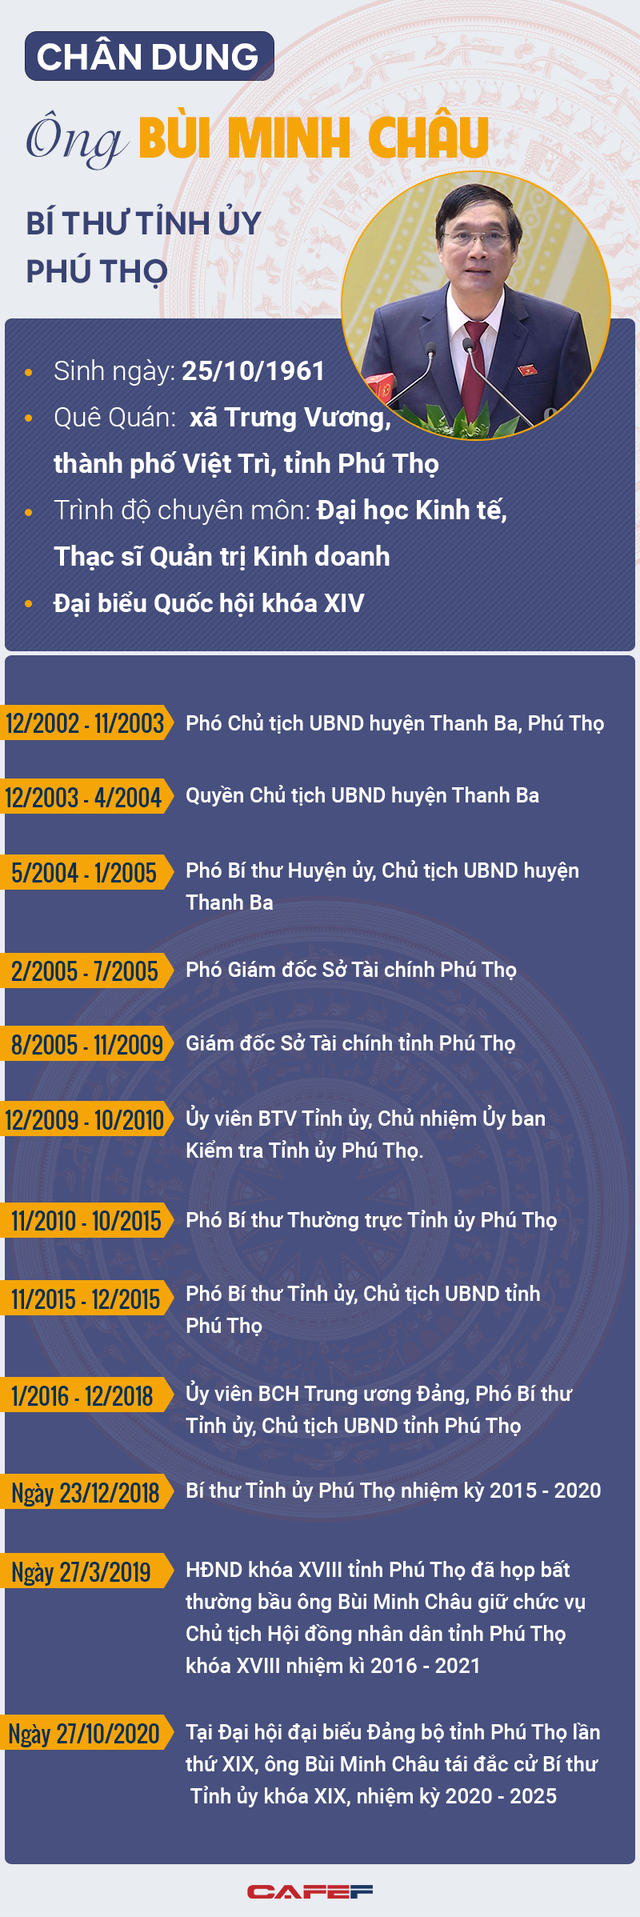 Infographic: Chân dung Bí thư Tỉnh ủy Phú Thọ Bùi Minh Châu - Ảnh 1.